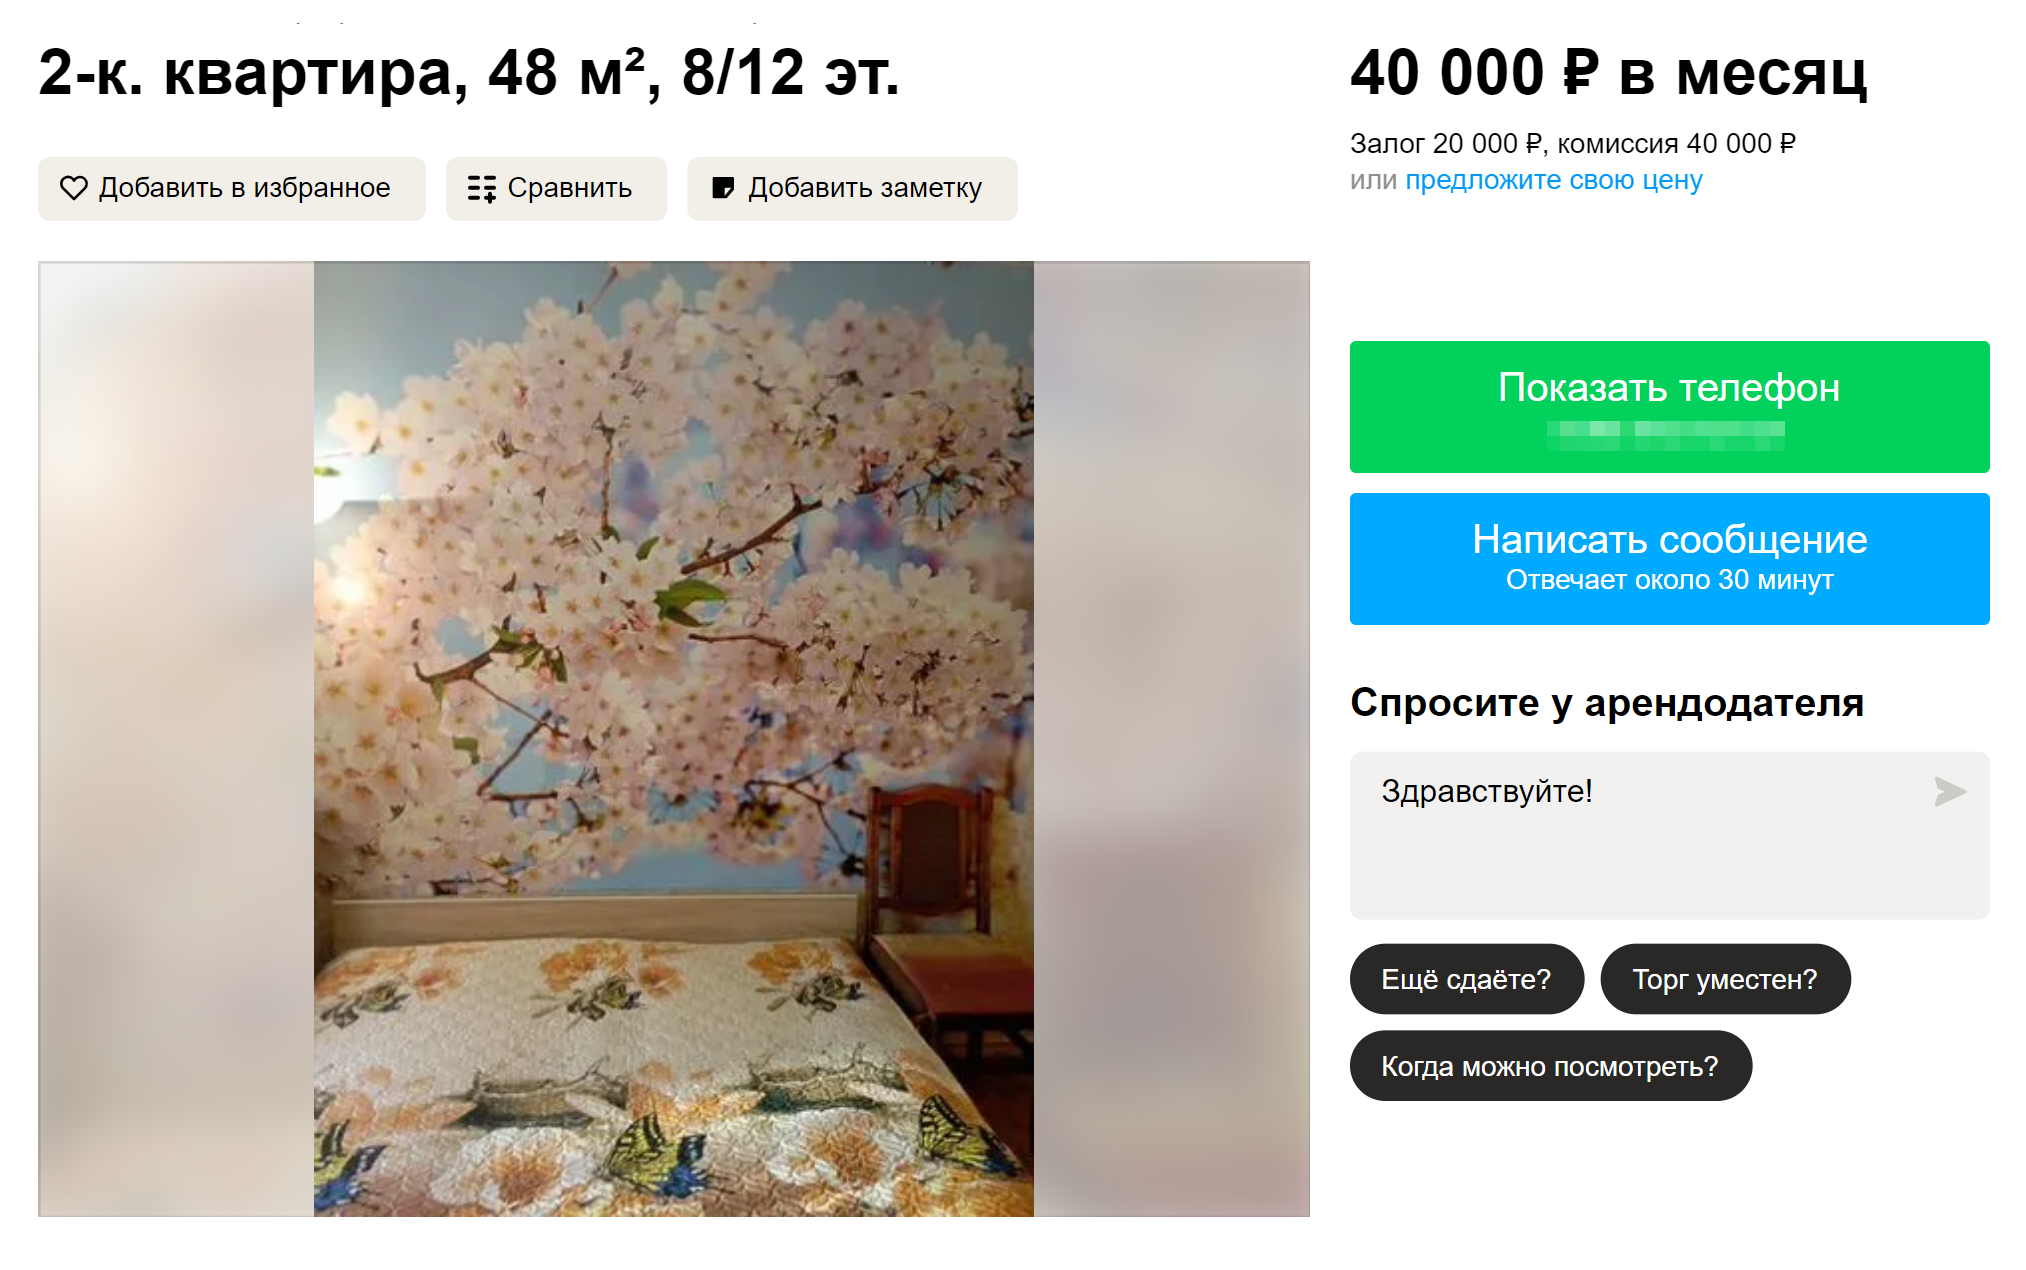 Двухкомнатная комнатная квартира в Останкинском районе — 40 000 ₽ на долгосрок. Источник: avito.ru